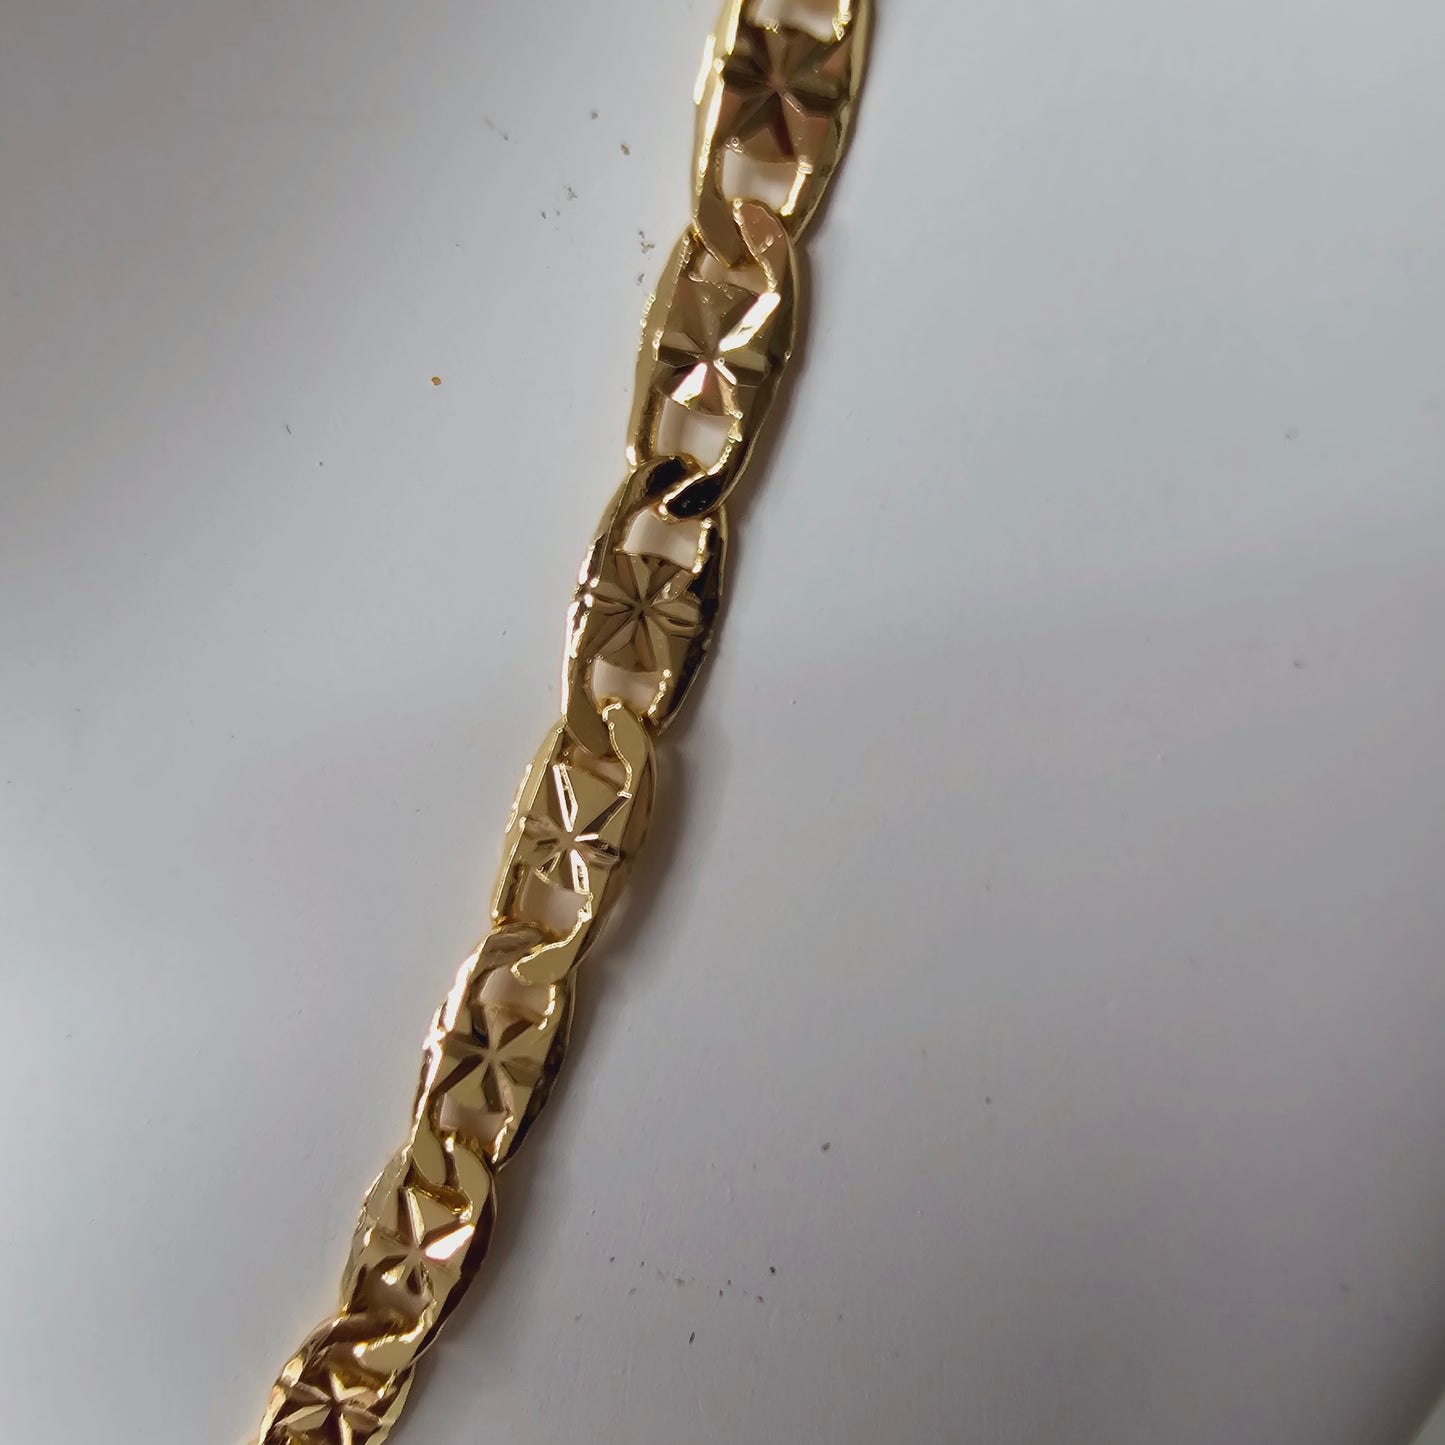 Cadenas de 20 pulgadas de largo de oro laminado  de alta calidad